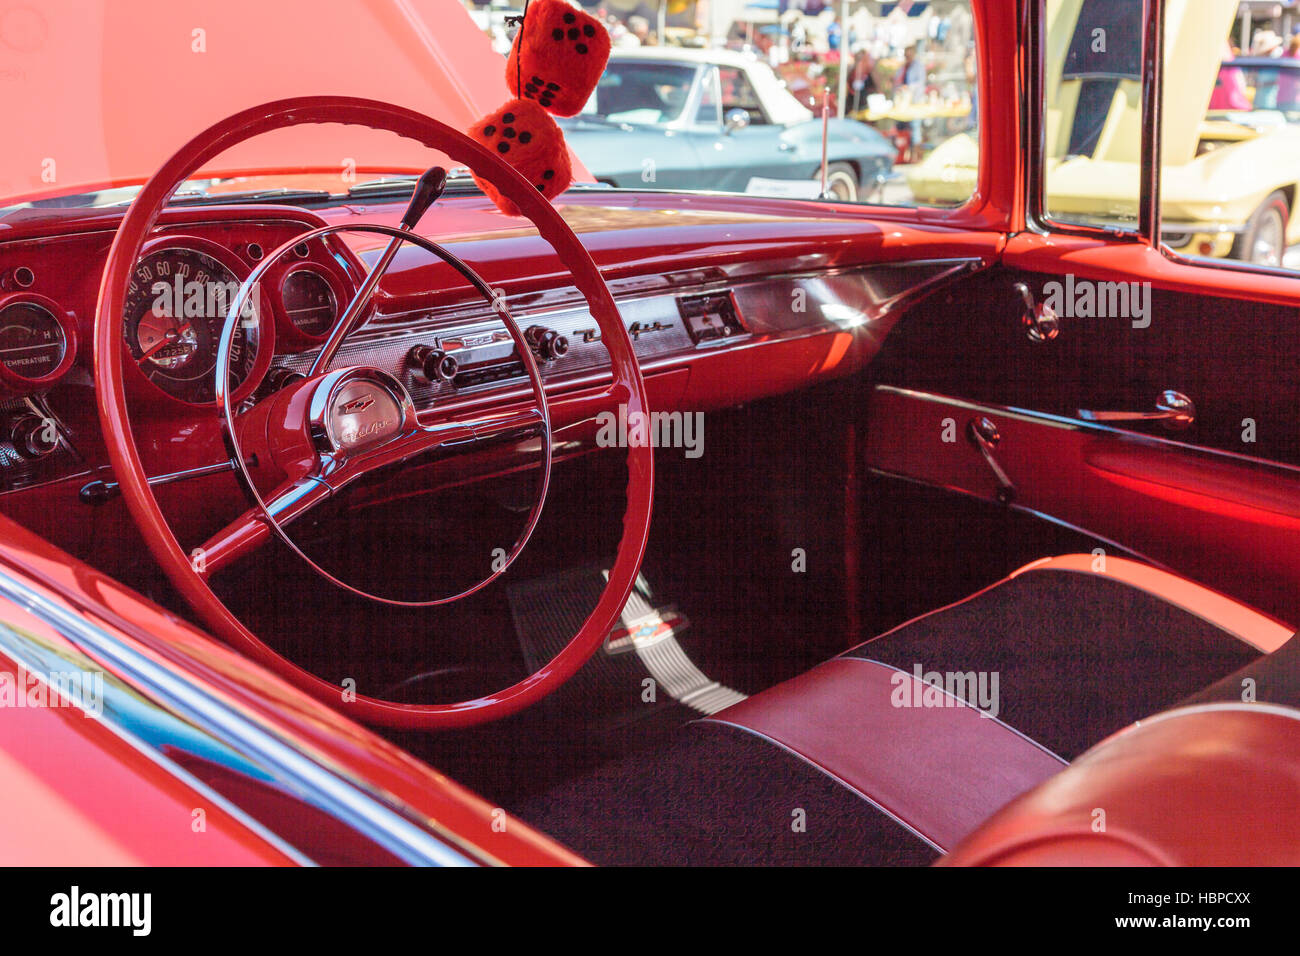 Red 1957 Chevrolet Bel Air 2 Door Hardtop Stock Photo